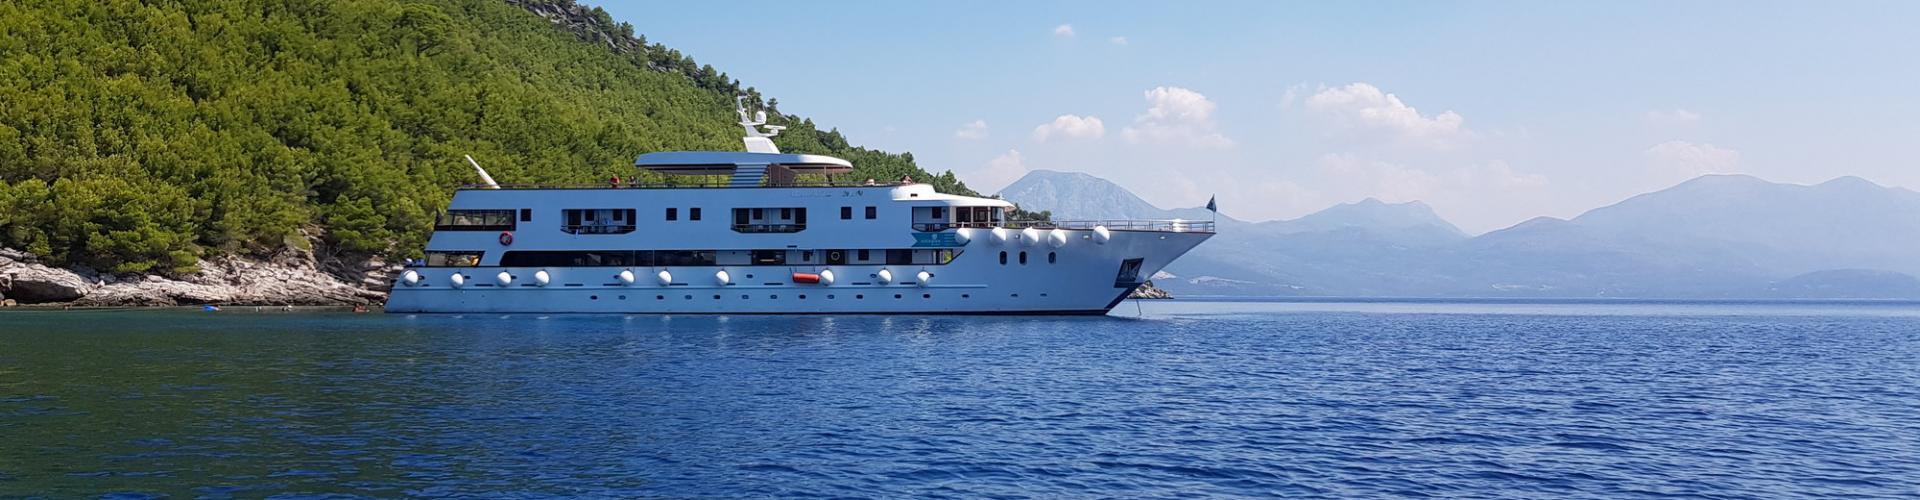 2018. Deluxe Superior cruiser MV Adriatic Sun